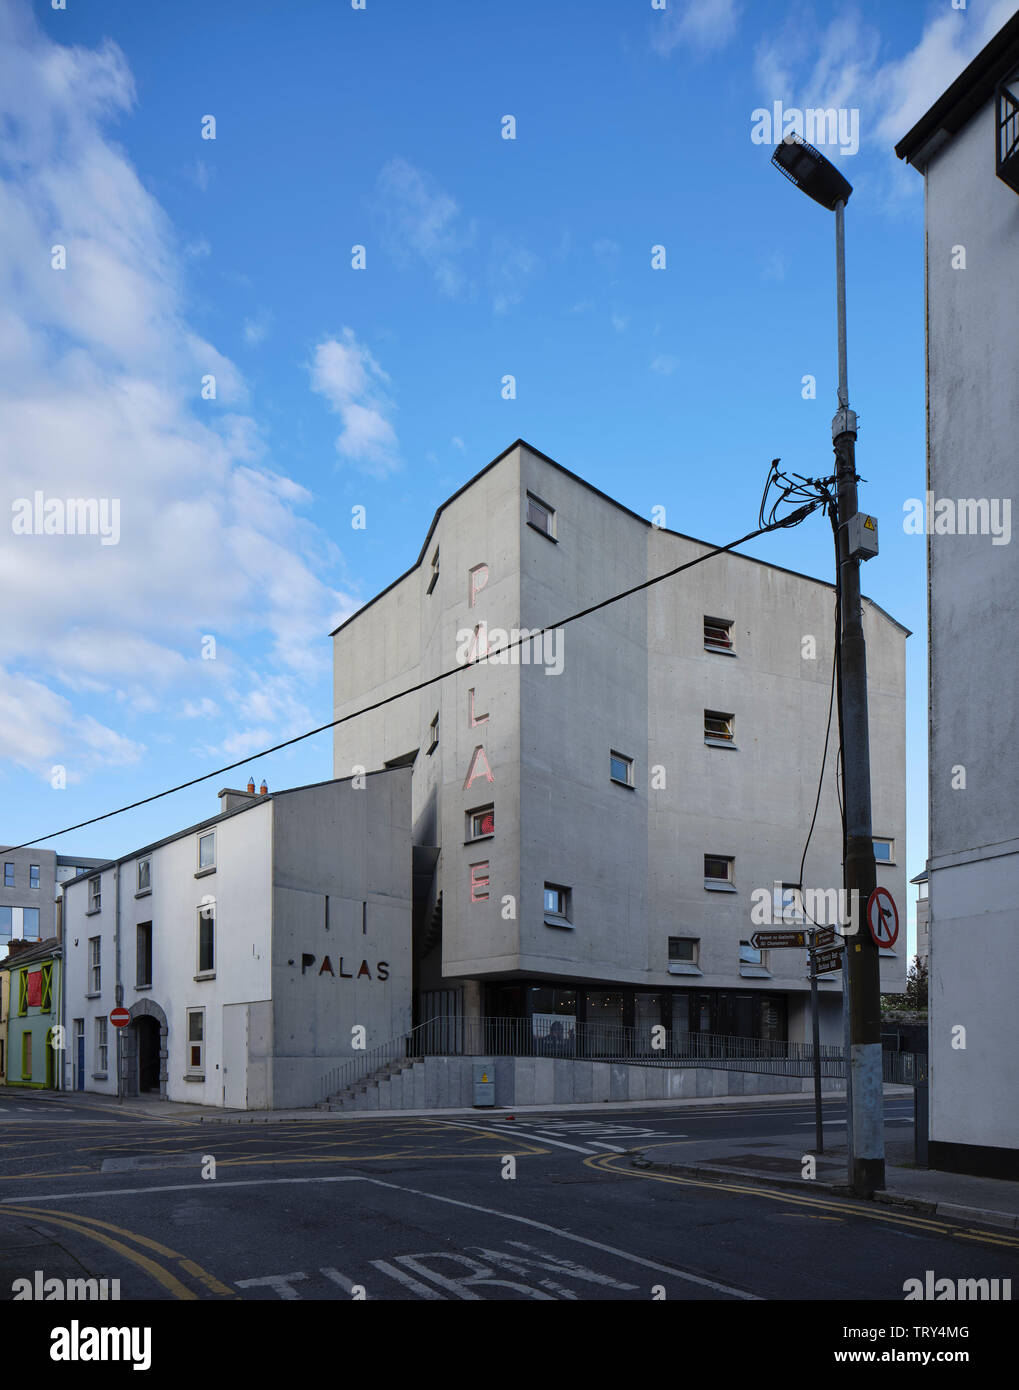 Corner maison de marchands d'élévation de la tour et du cinéma. Pálás Cinéma, Galway, Irlande. Architecte : dePaor, 2017. Banque D'Images